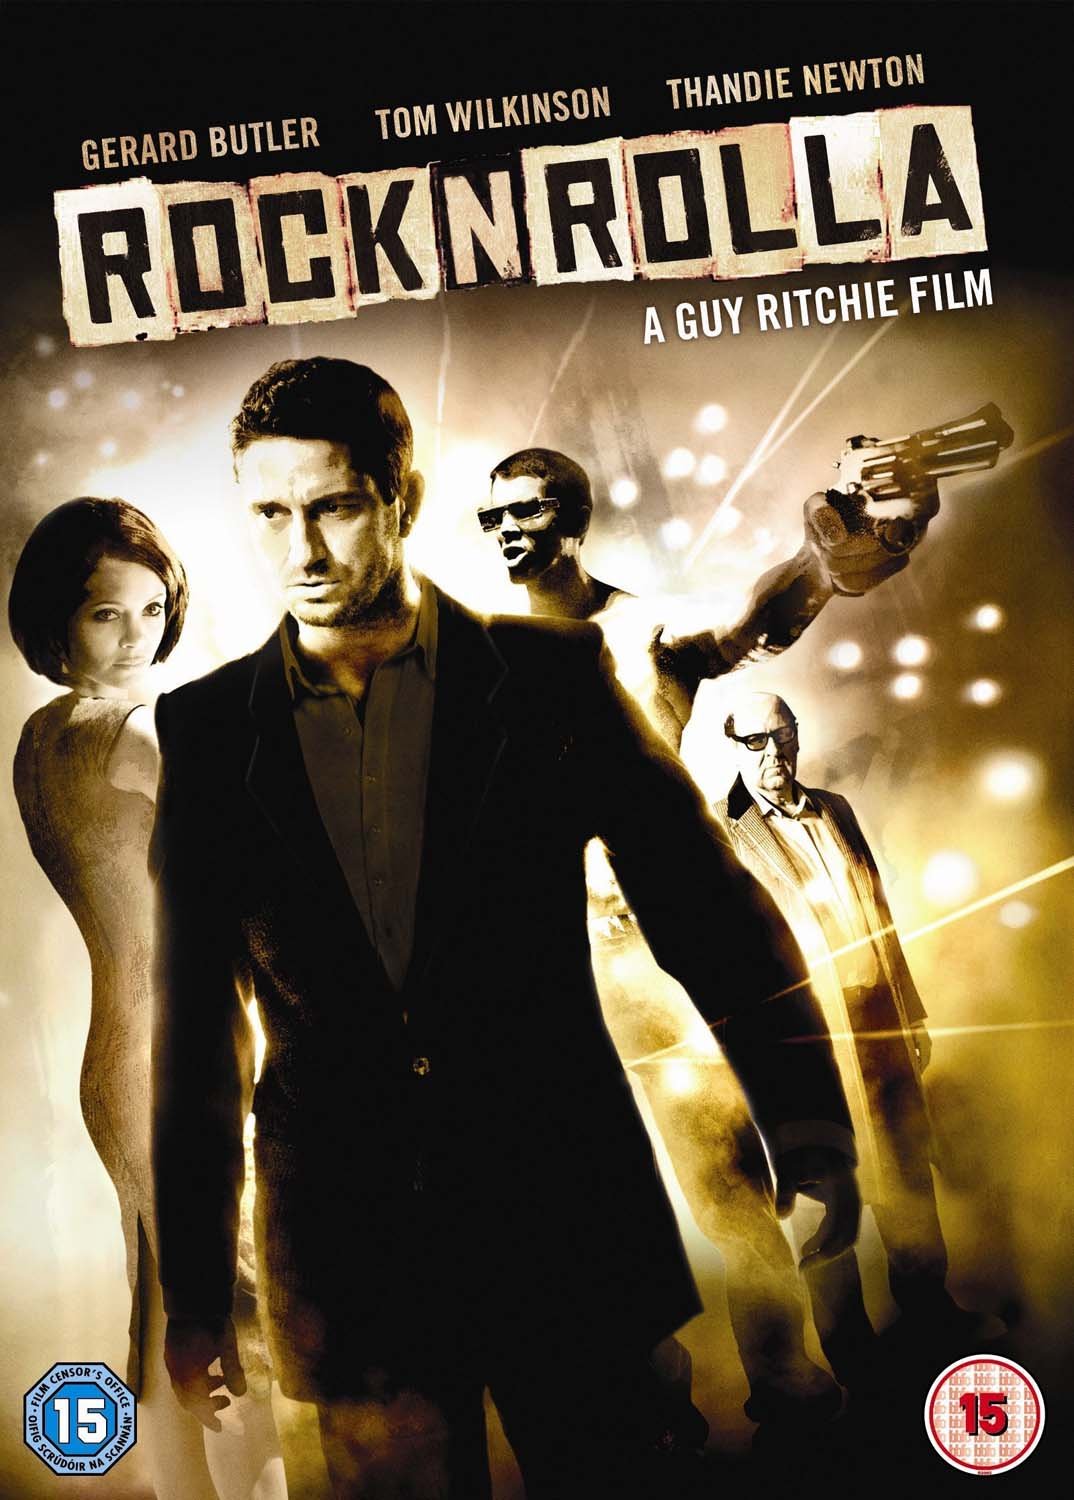 Stiahni si HD Filmy RocknRolla (2008)(CZ)[1080p] = CSFD 77%